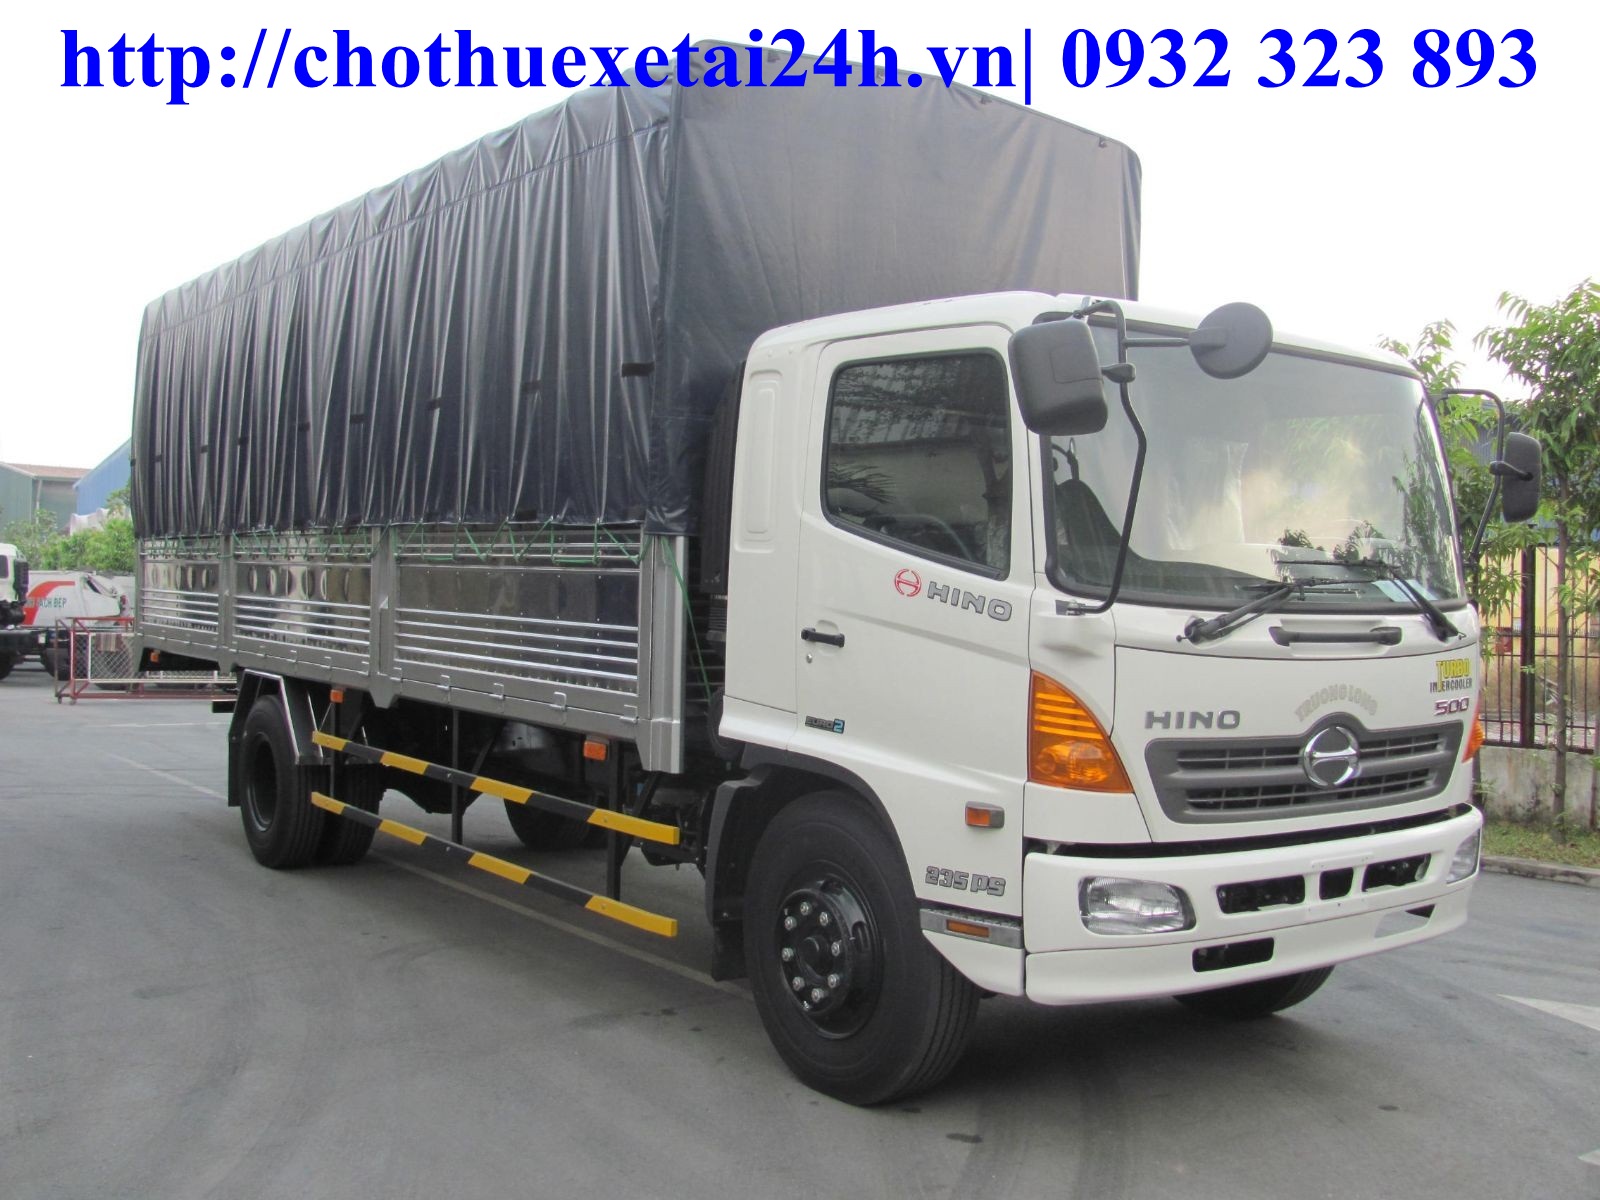 Cho thuê xe tải 3.5 tấn tại Hà Nội chở hàng